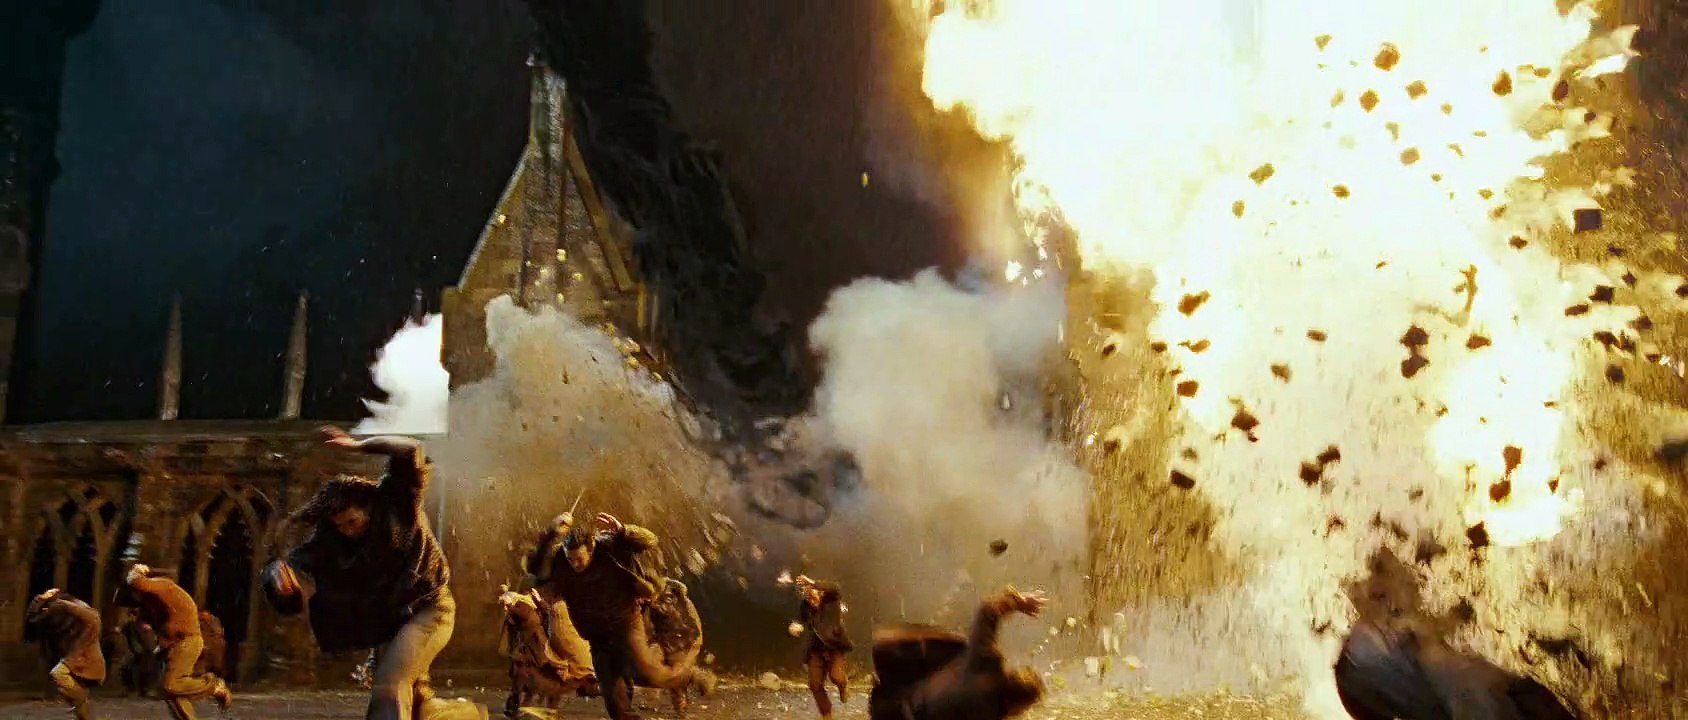 Harry Potter und die Heiligtümer des Todes - Teil 2 Trailer DF